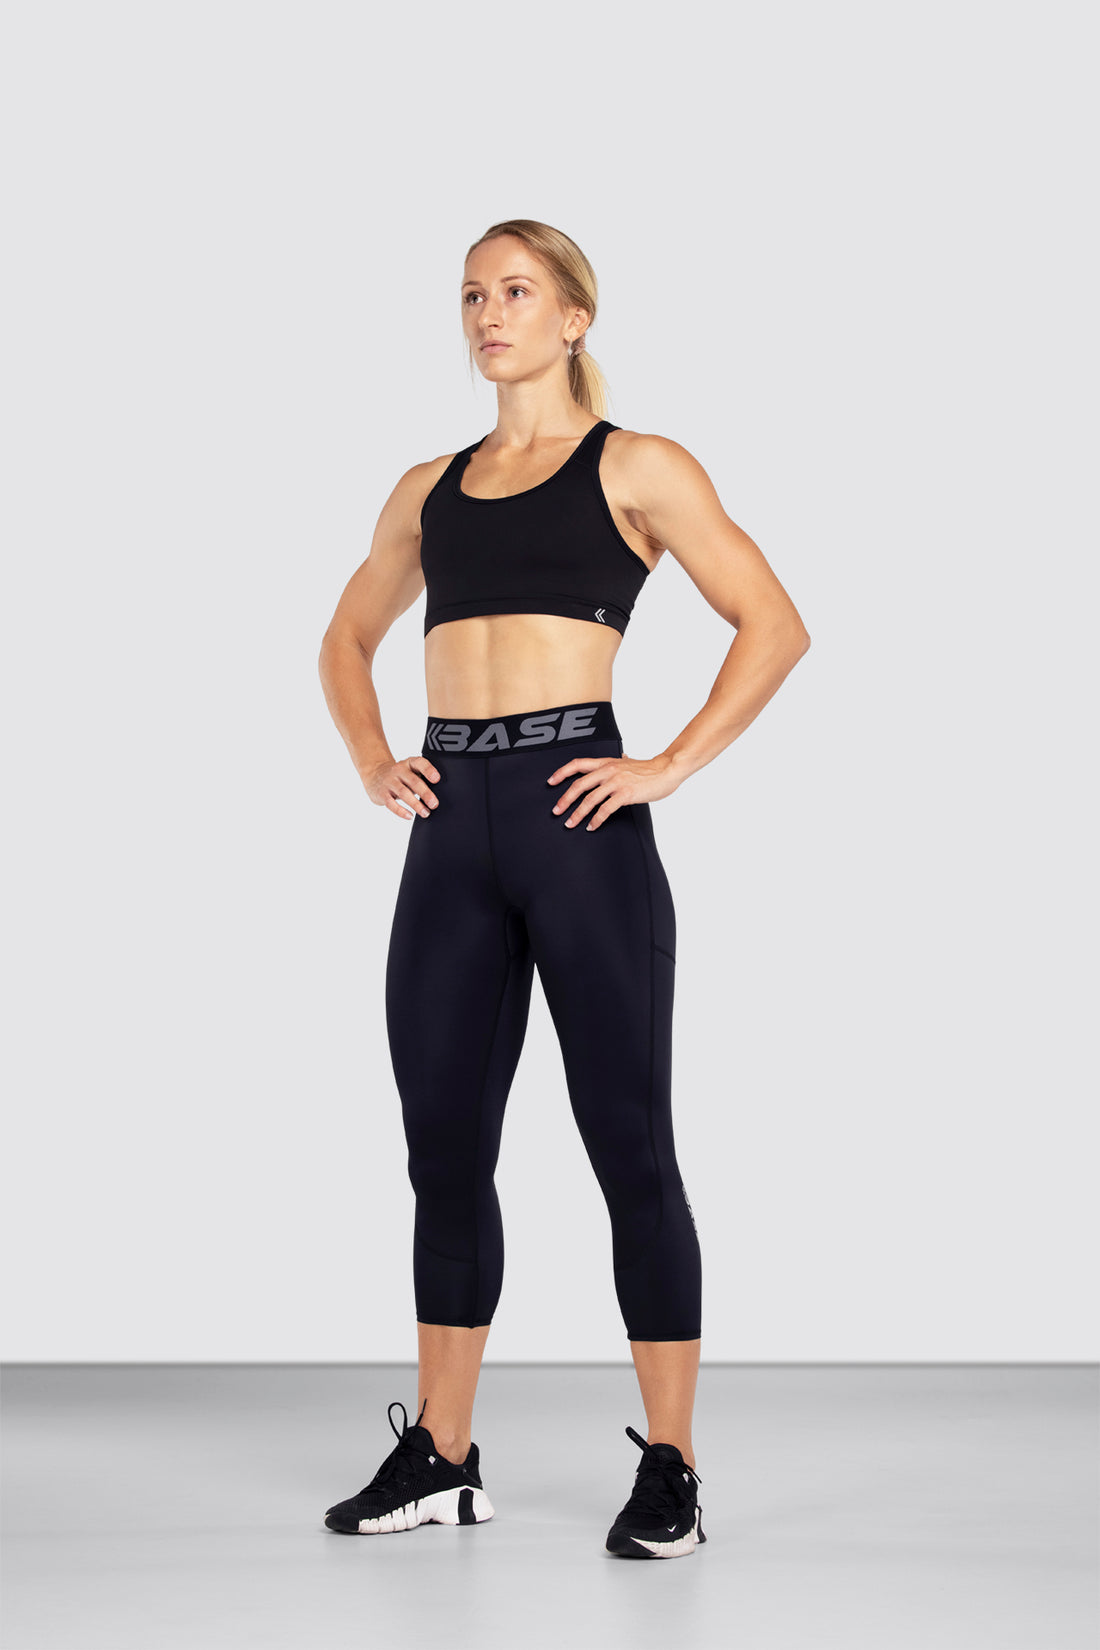 Lole Sierra ankle leggings for women - Soccer Sport Fitness